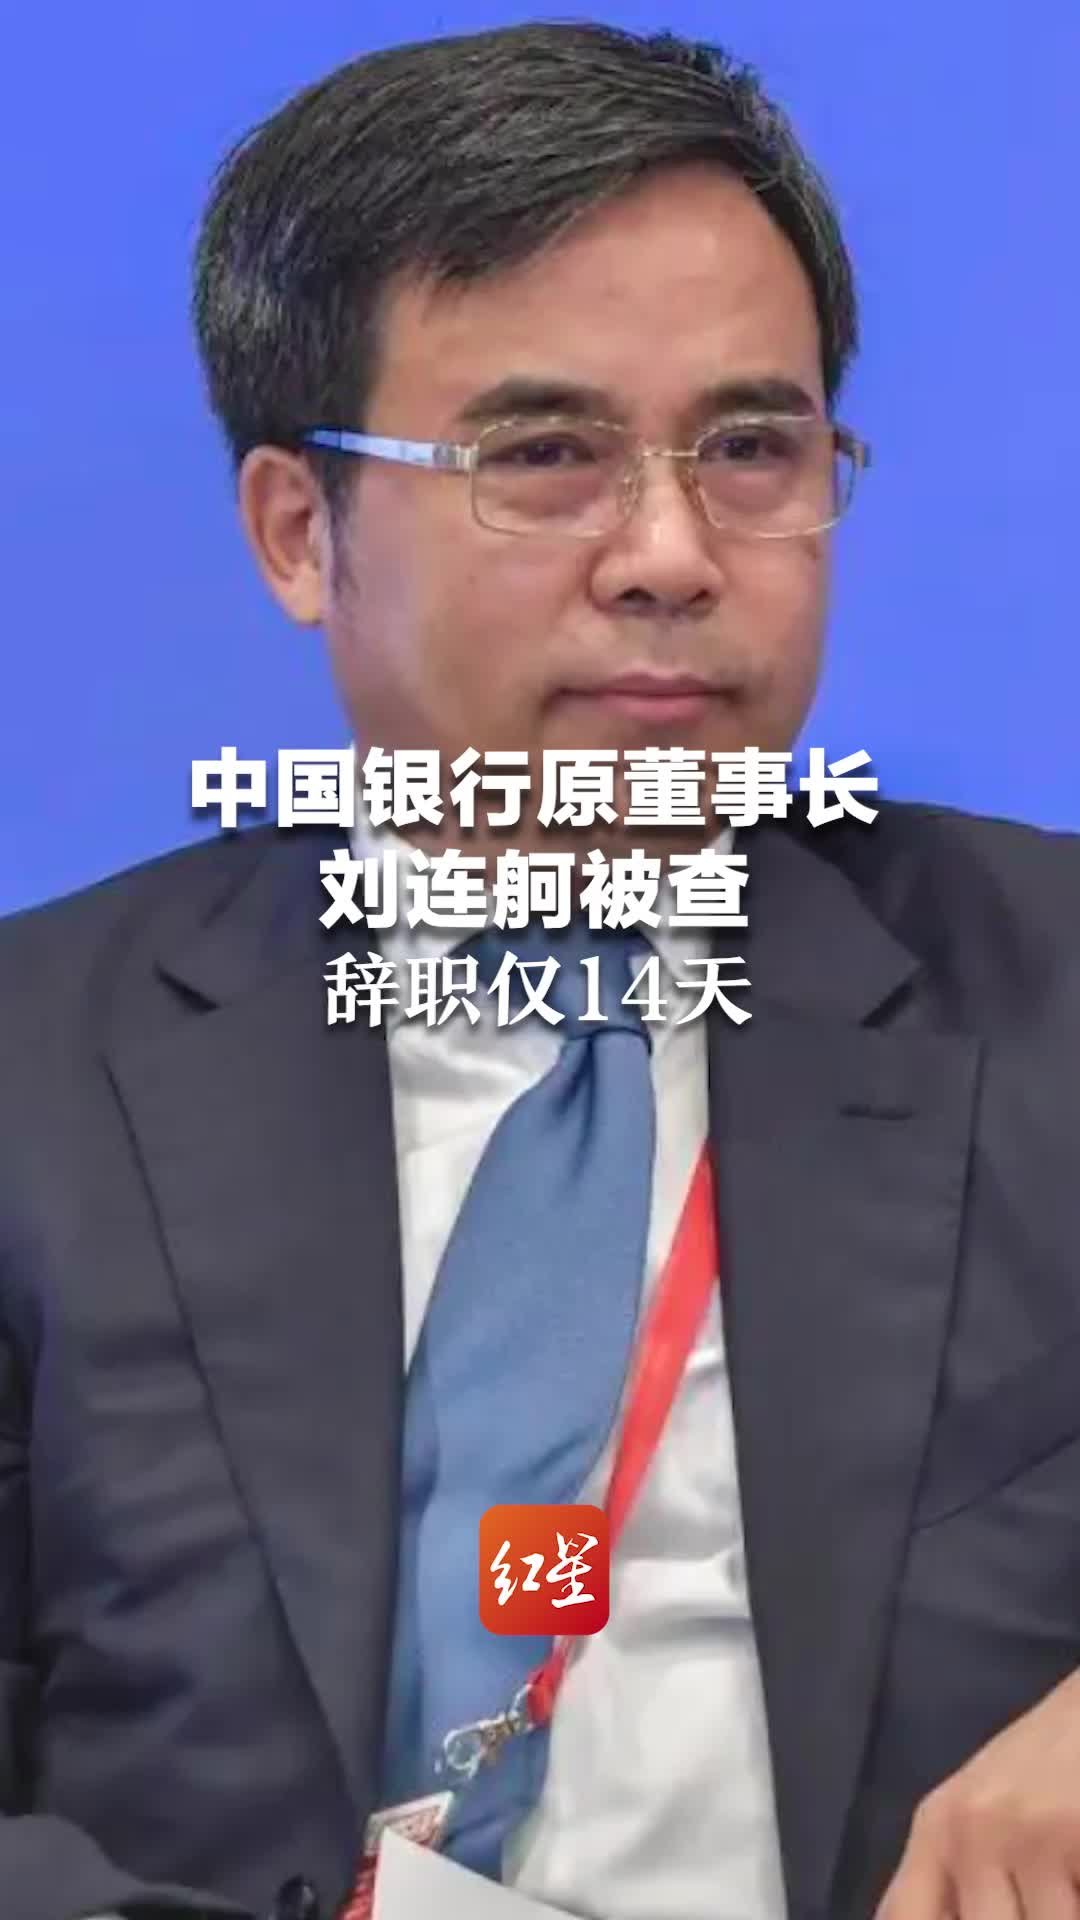 中国银行原董事长刘连舸被查 辞职仅14天